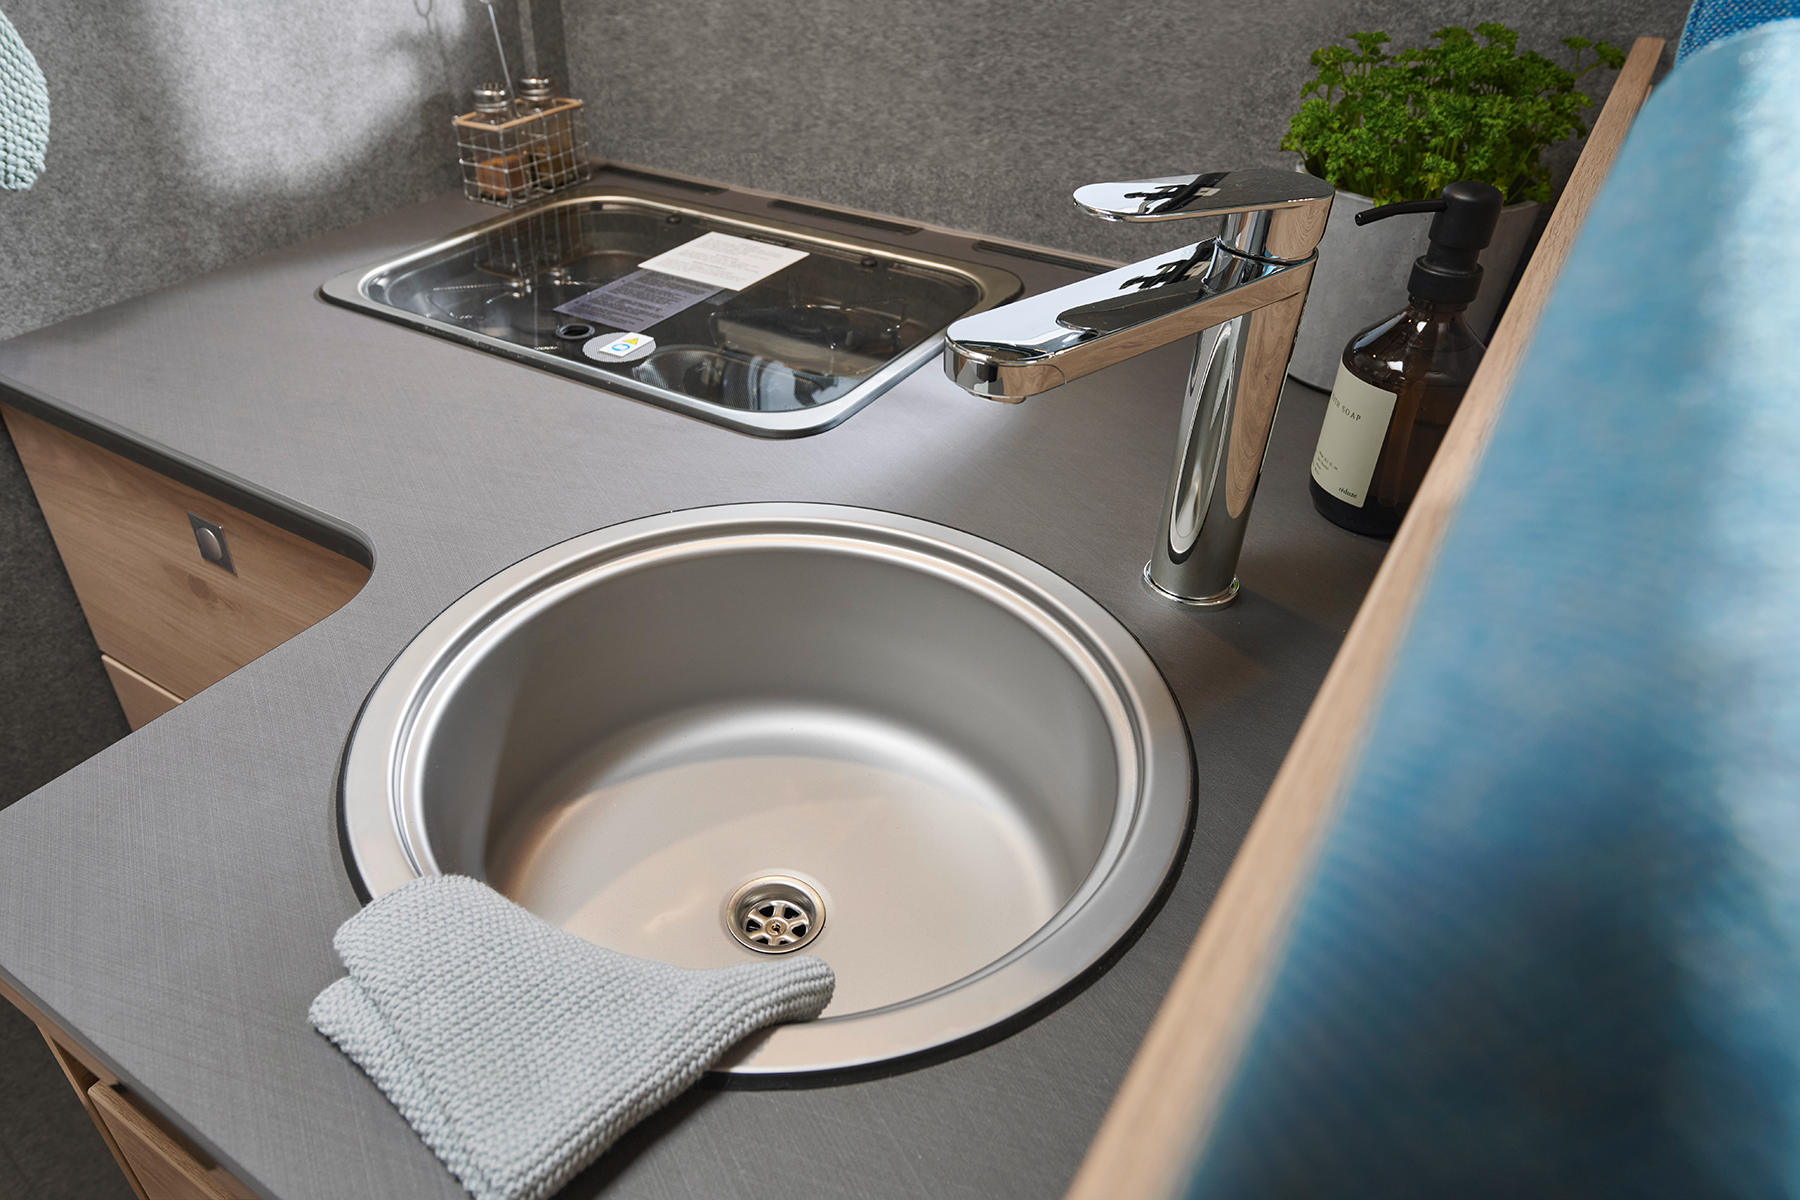 Il rubinetto rialzato consente di lavare perfettamente nel lavello anche le pentole e padelle di grandi dimensioni.